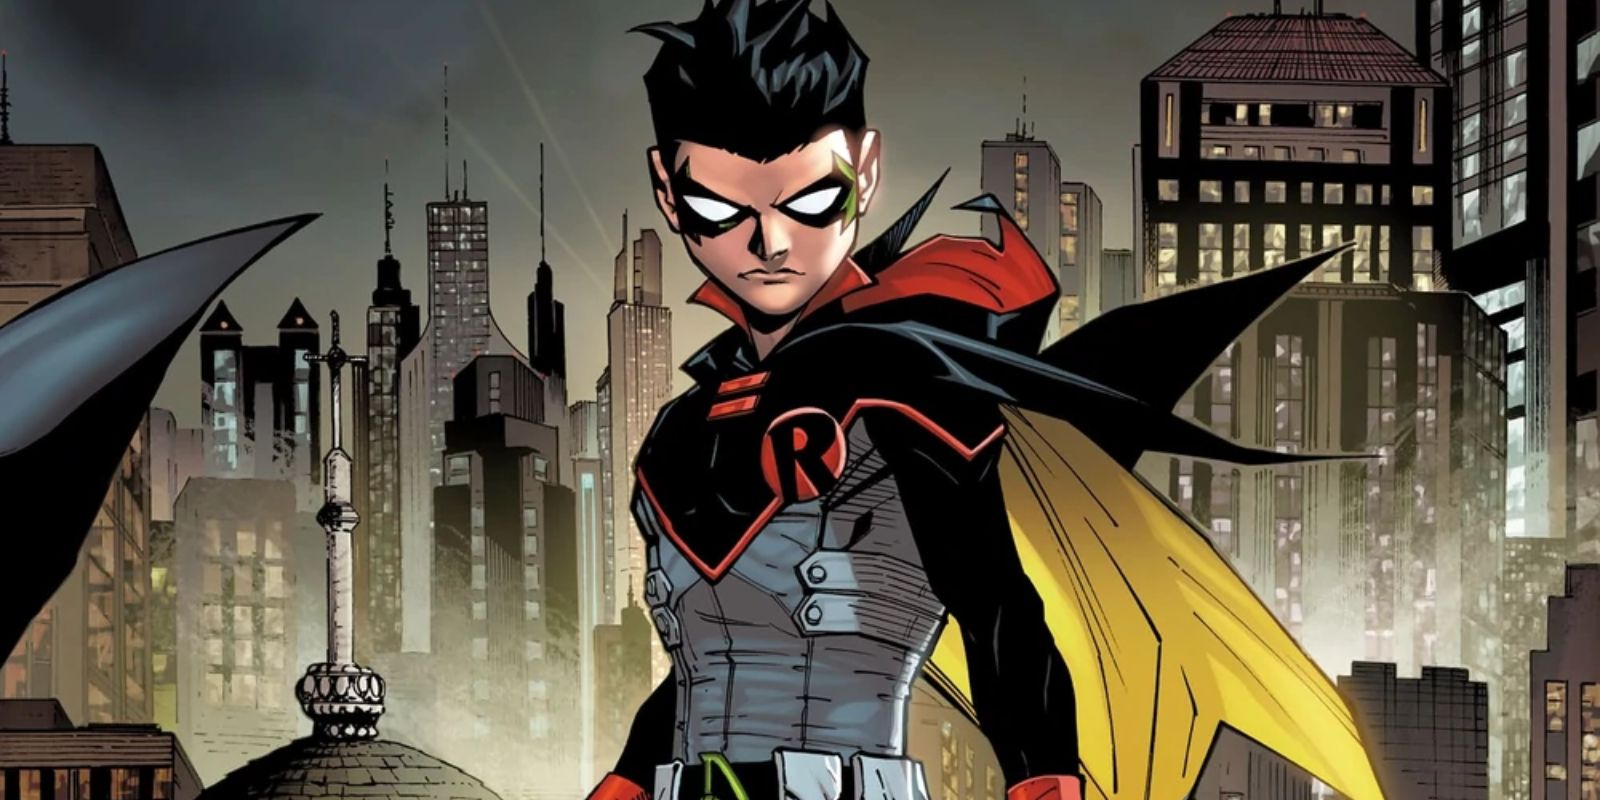 Les gratte-ciel de Gotham City se profilent derrière Robin de Damian Wayne dans une illustration de Batman